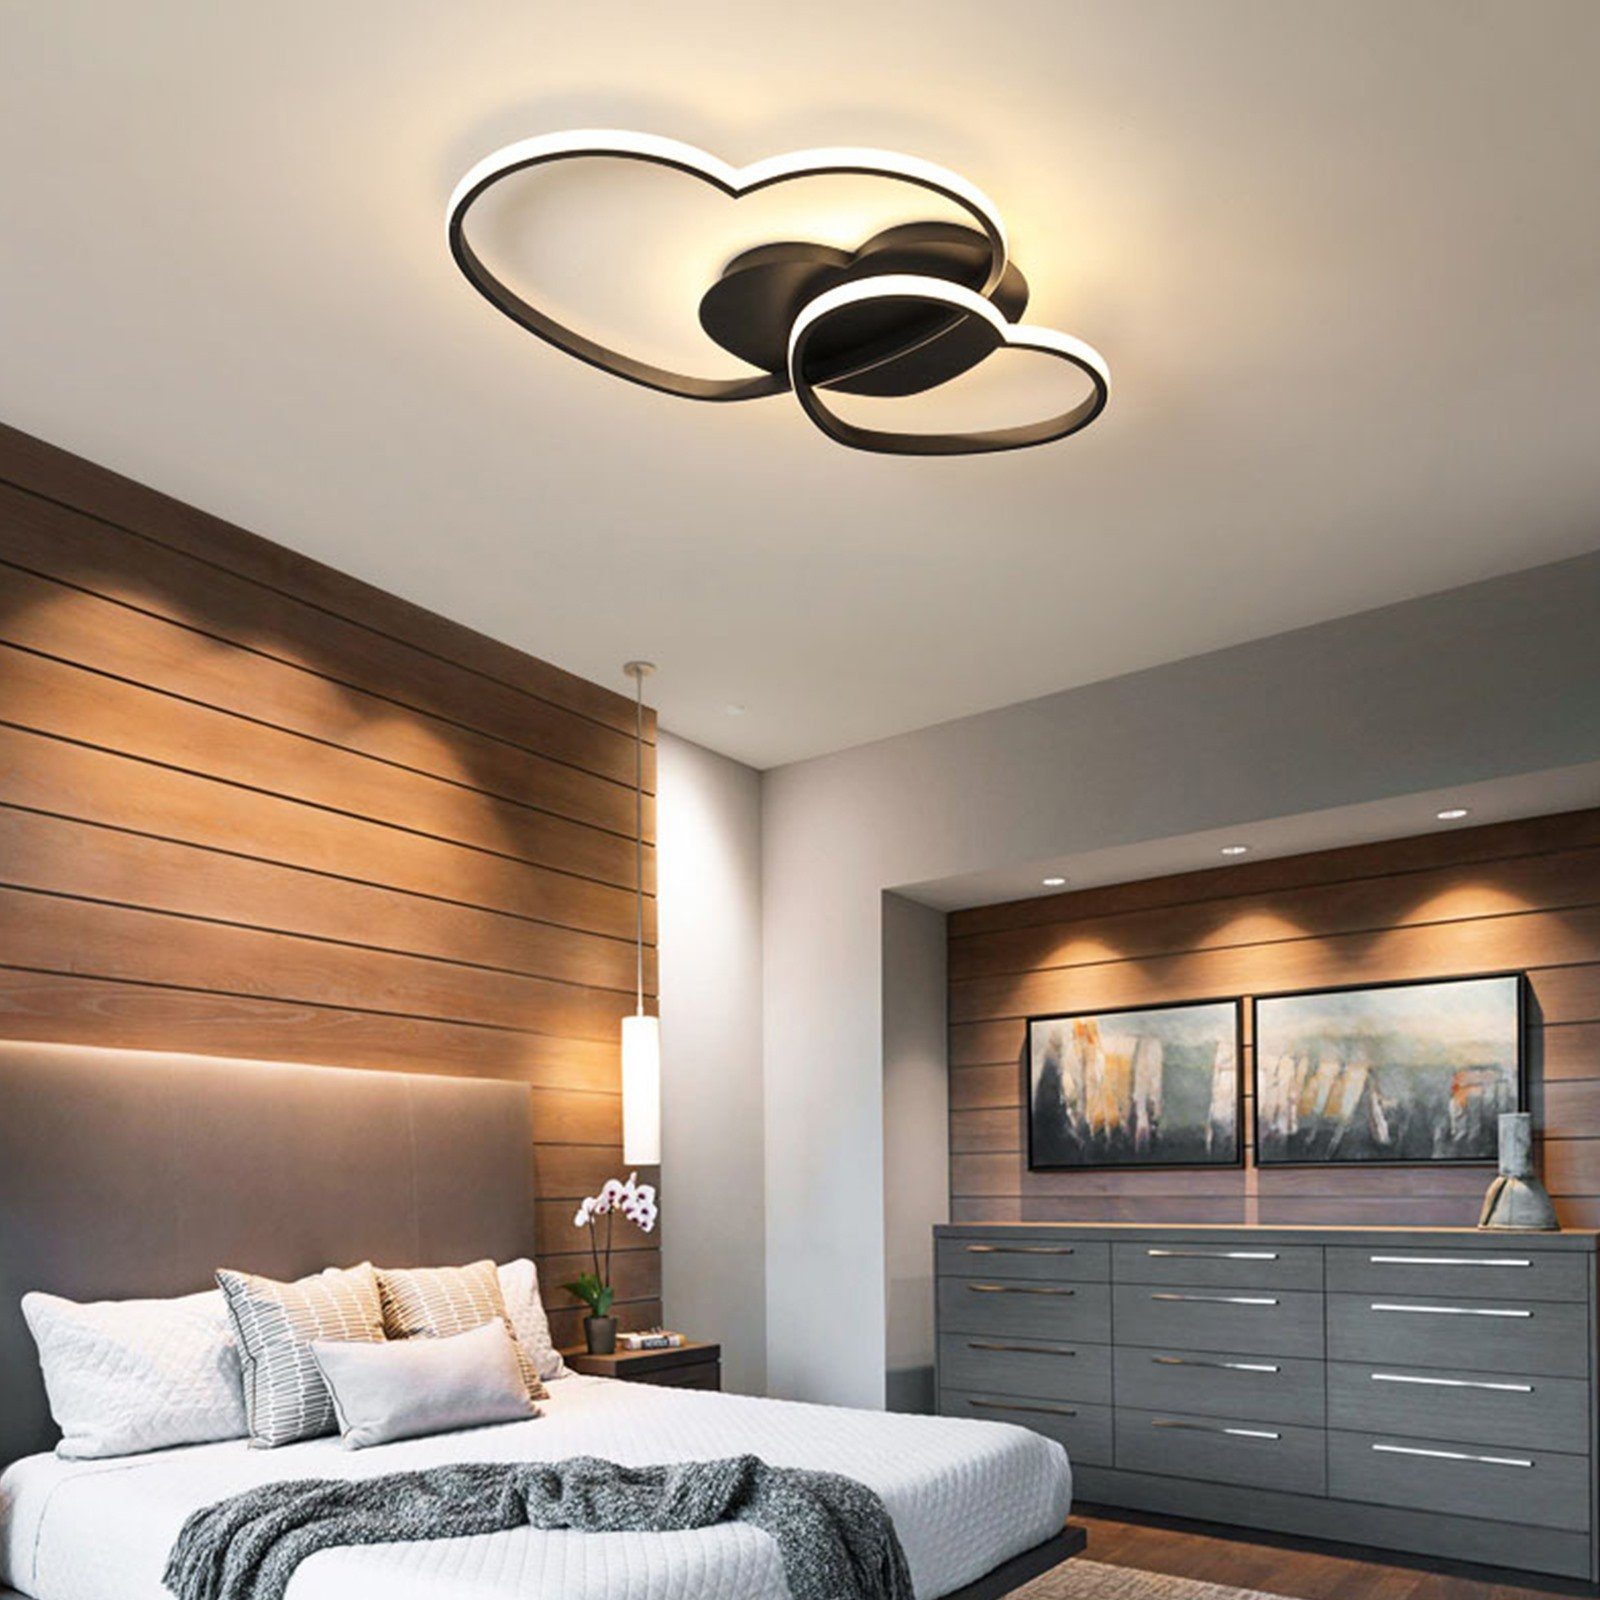 Daskoo Deckenleuchten 22W Herzförmig LED Deckenlampe mit Fernbedienung Dimmbar Schlafzimmer, LED fest integriert, Neutralweiß,Warmweiß,Kaltweiß, LED Deckenleuchte stufenlos dimmbar Schwarz